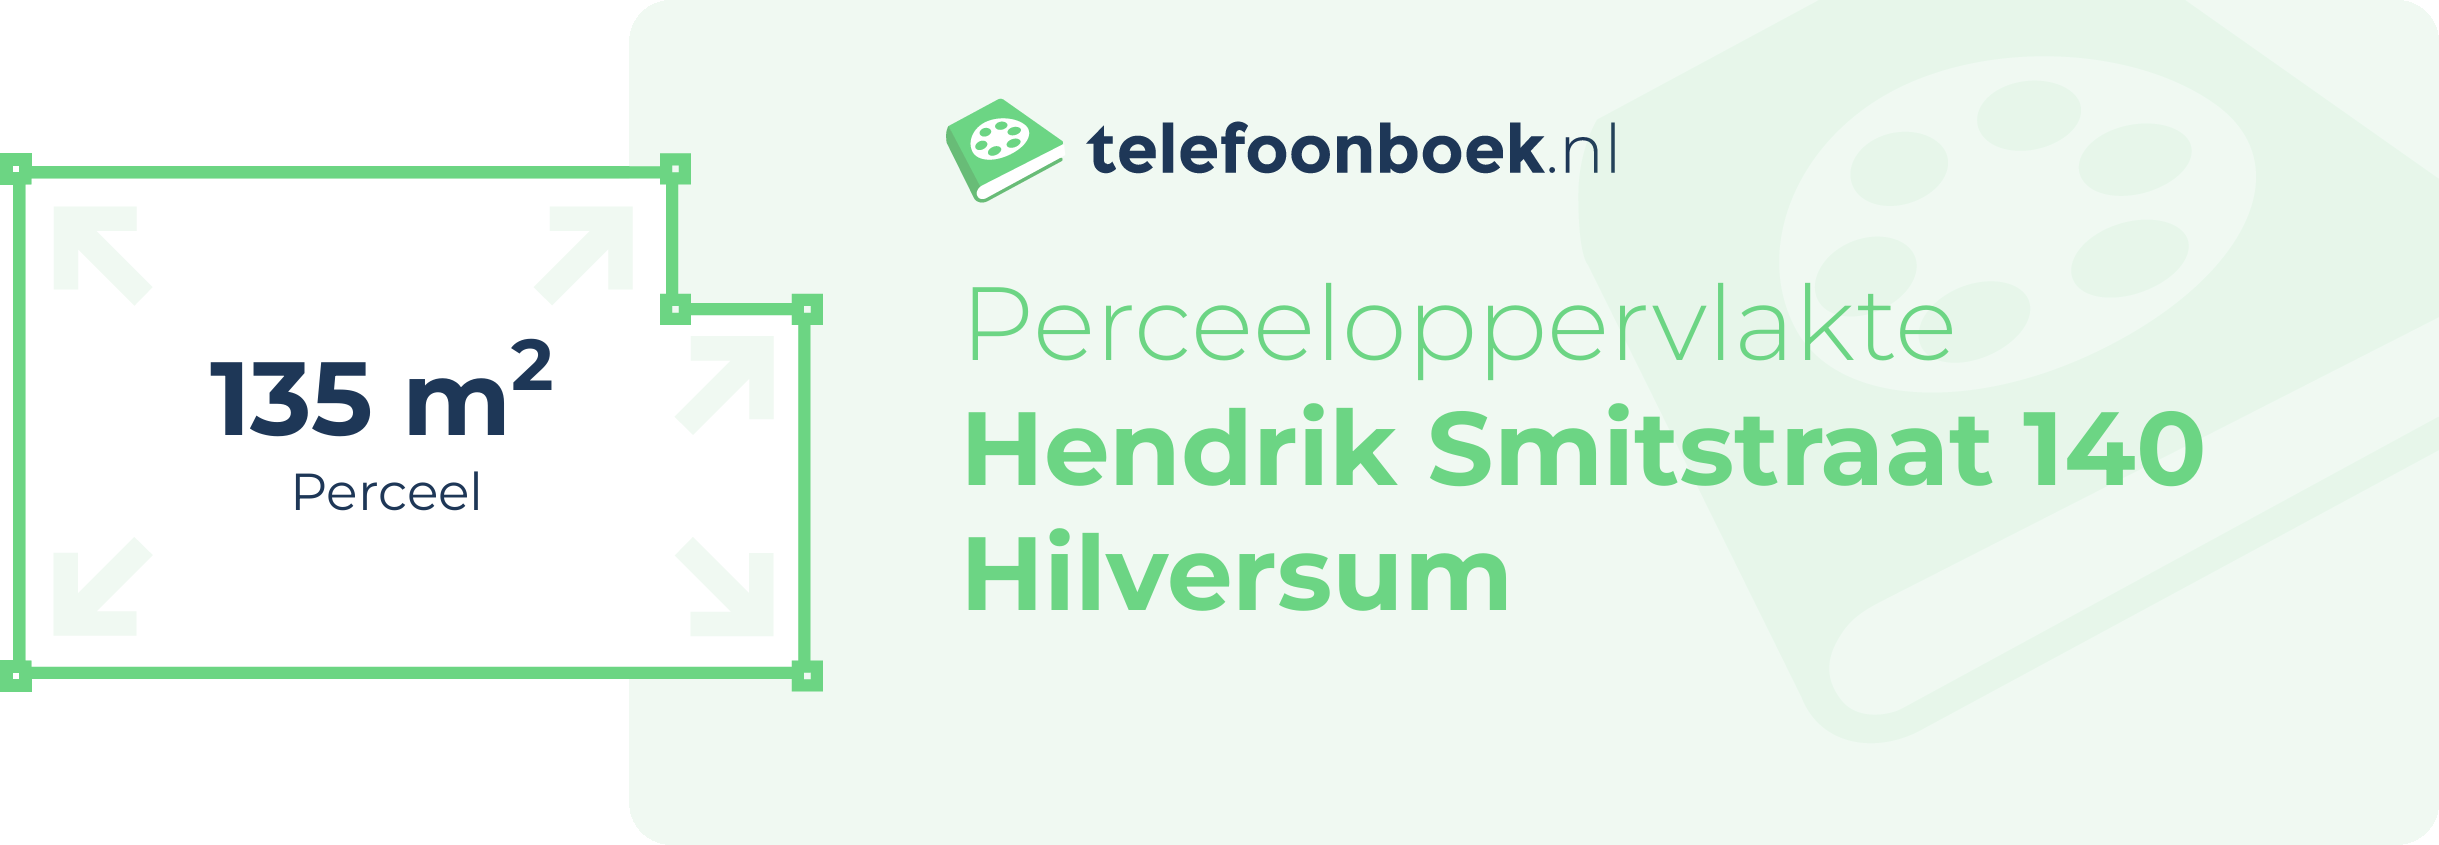 Perceeloppervlakte Hendrik Smitstraat 140 Hilversum